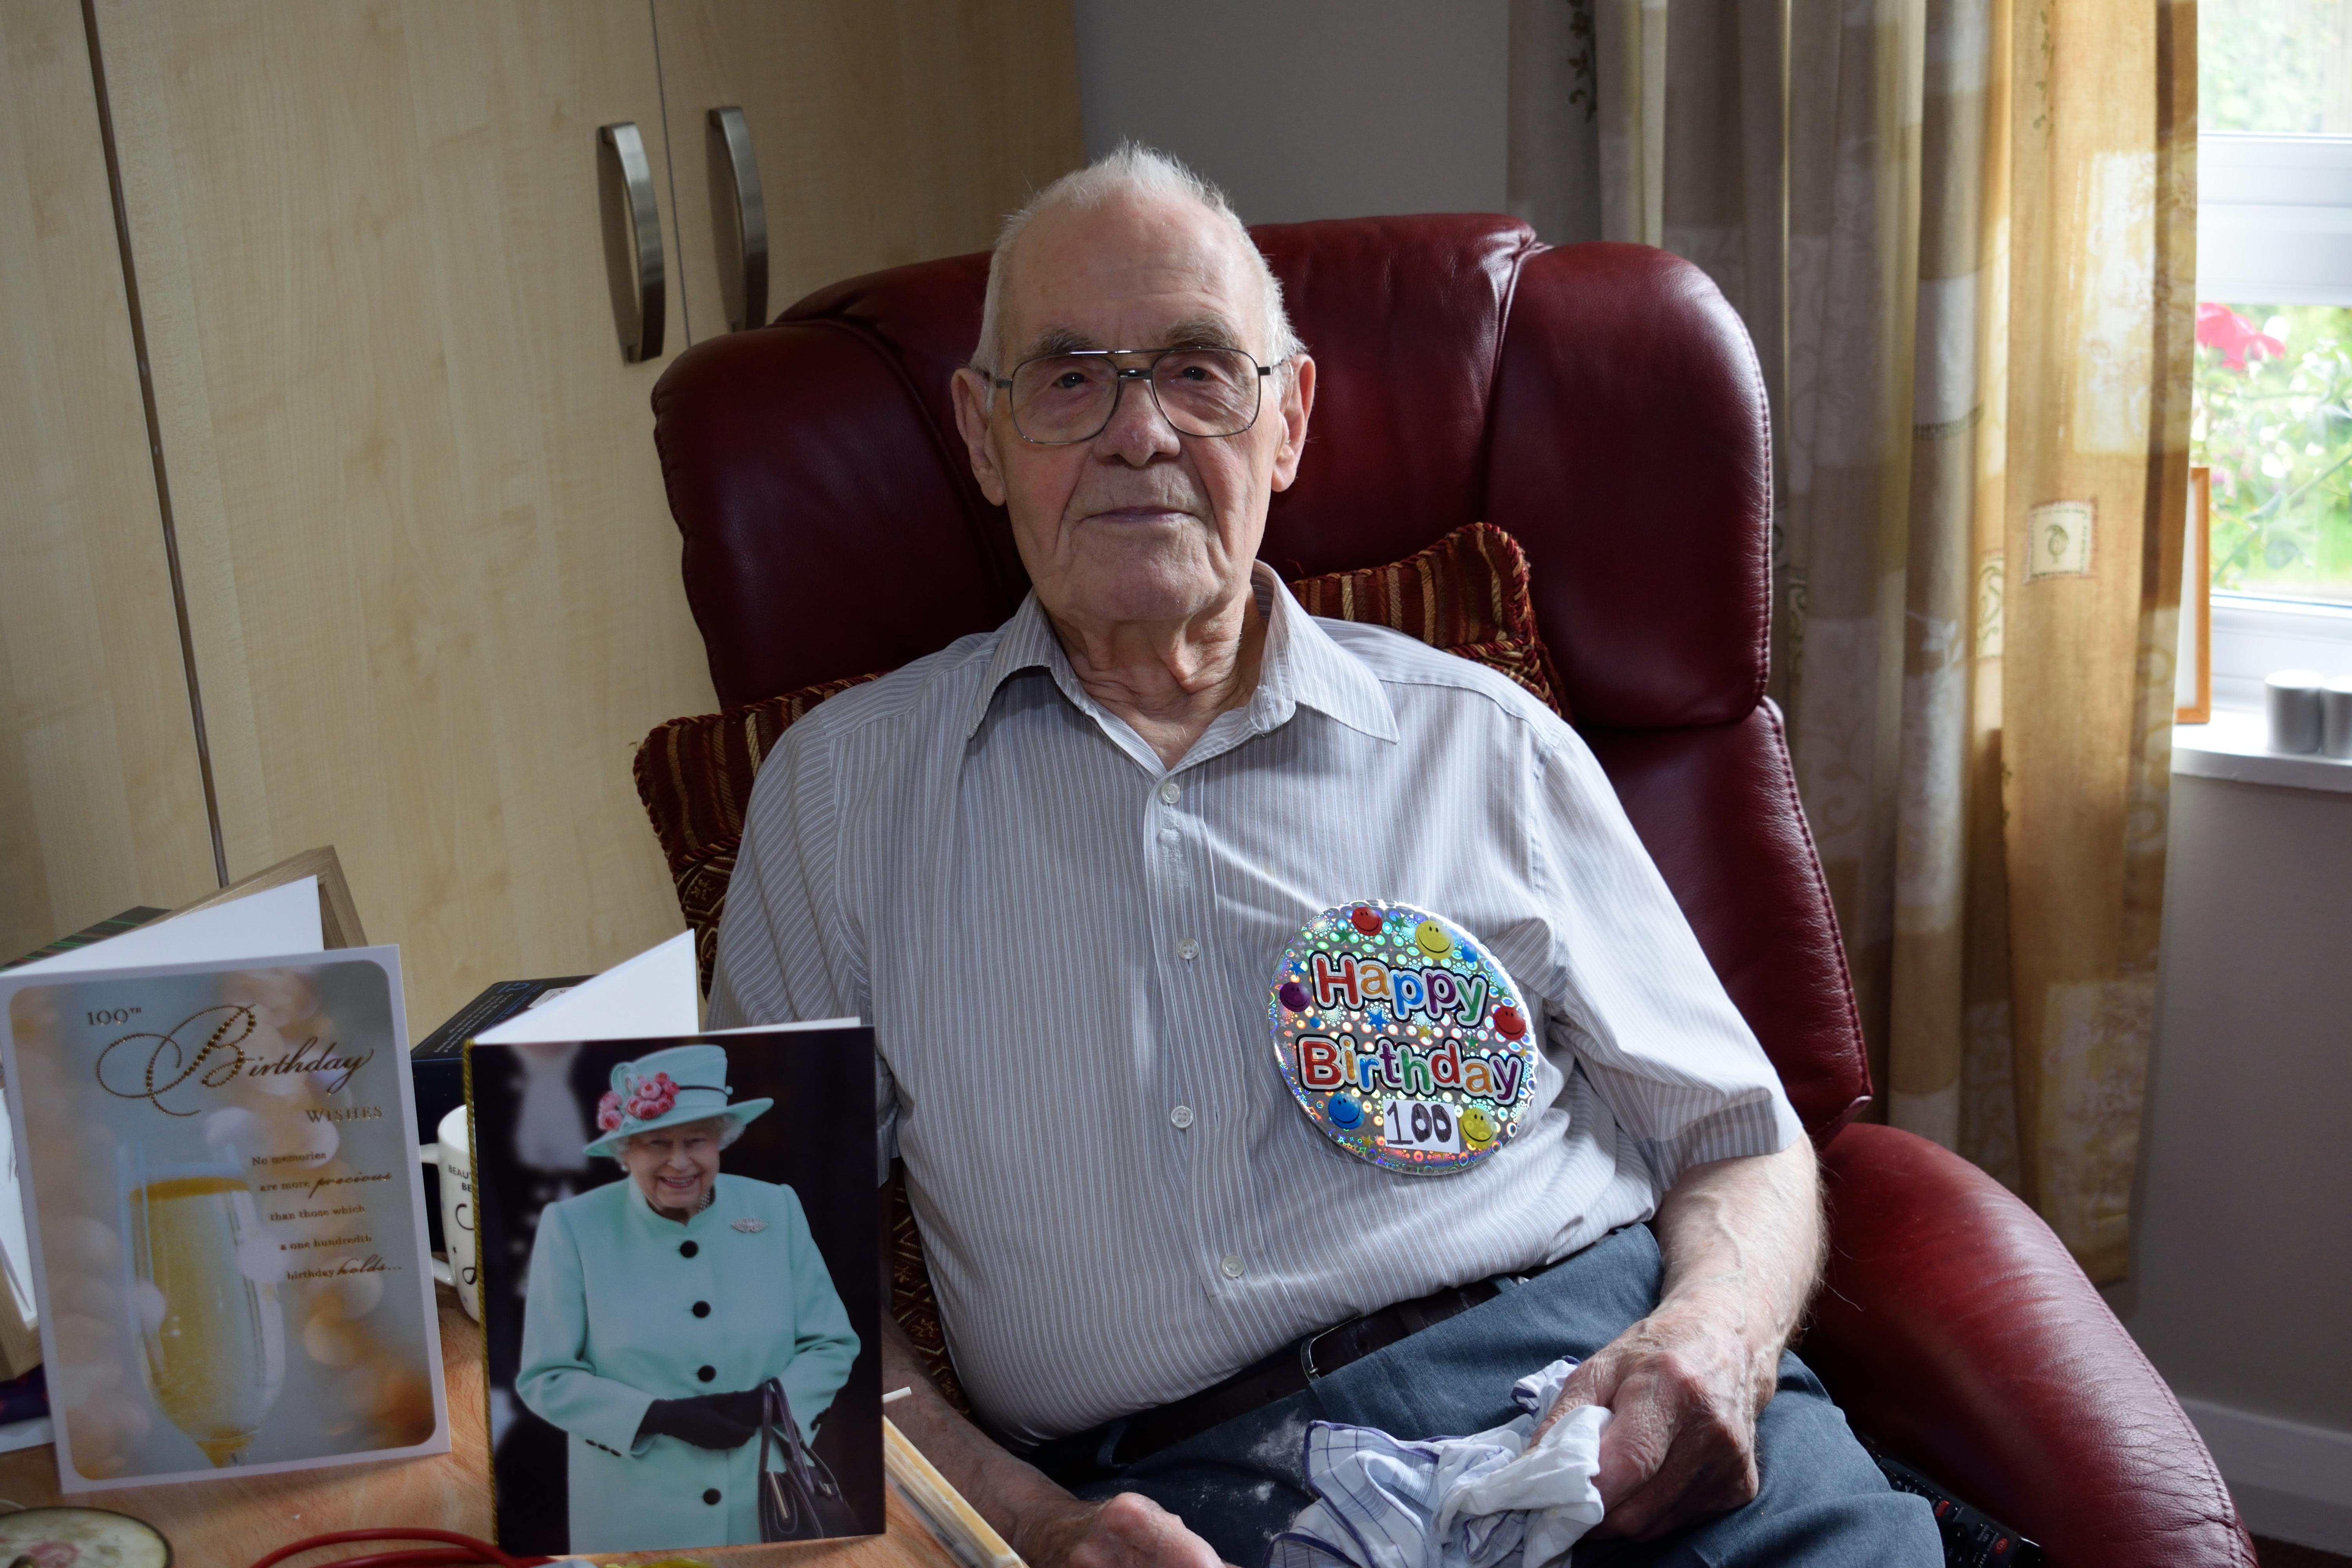 100-year-old Ernie